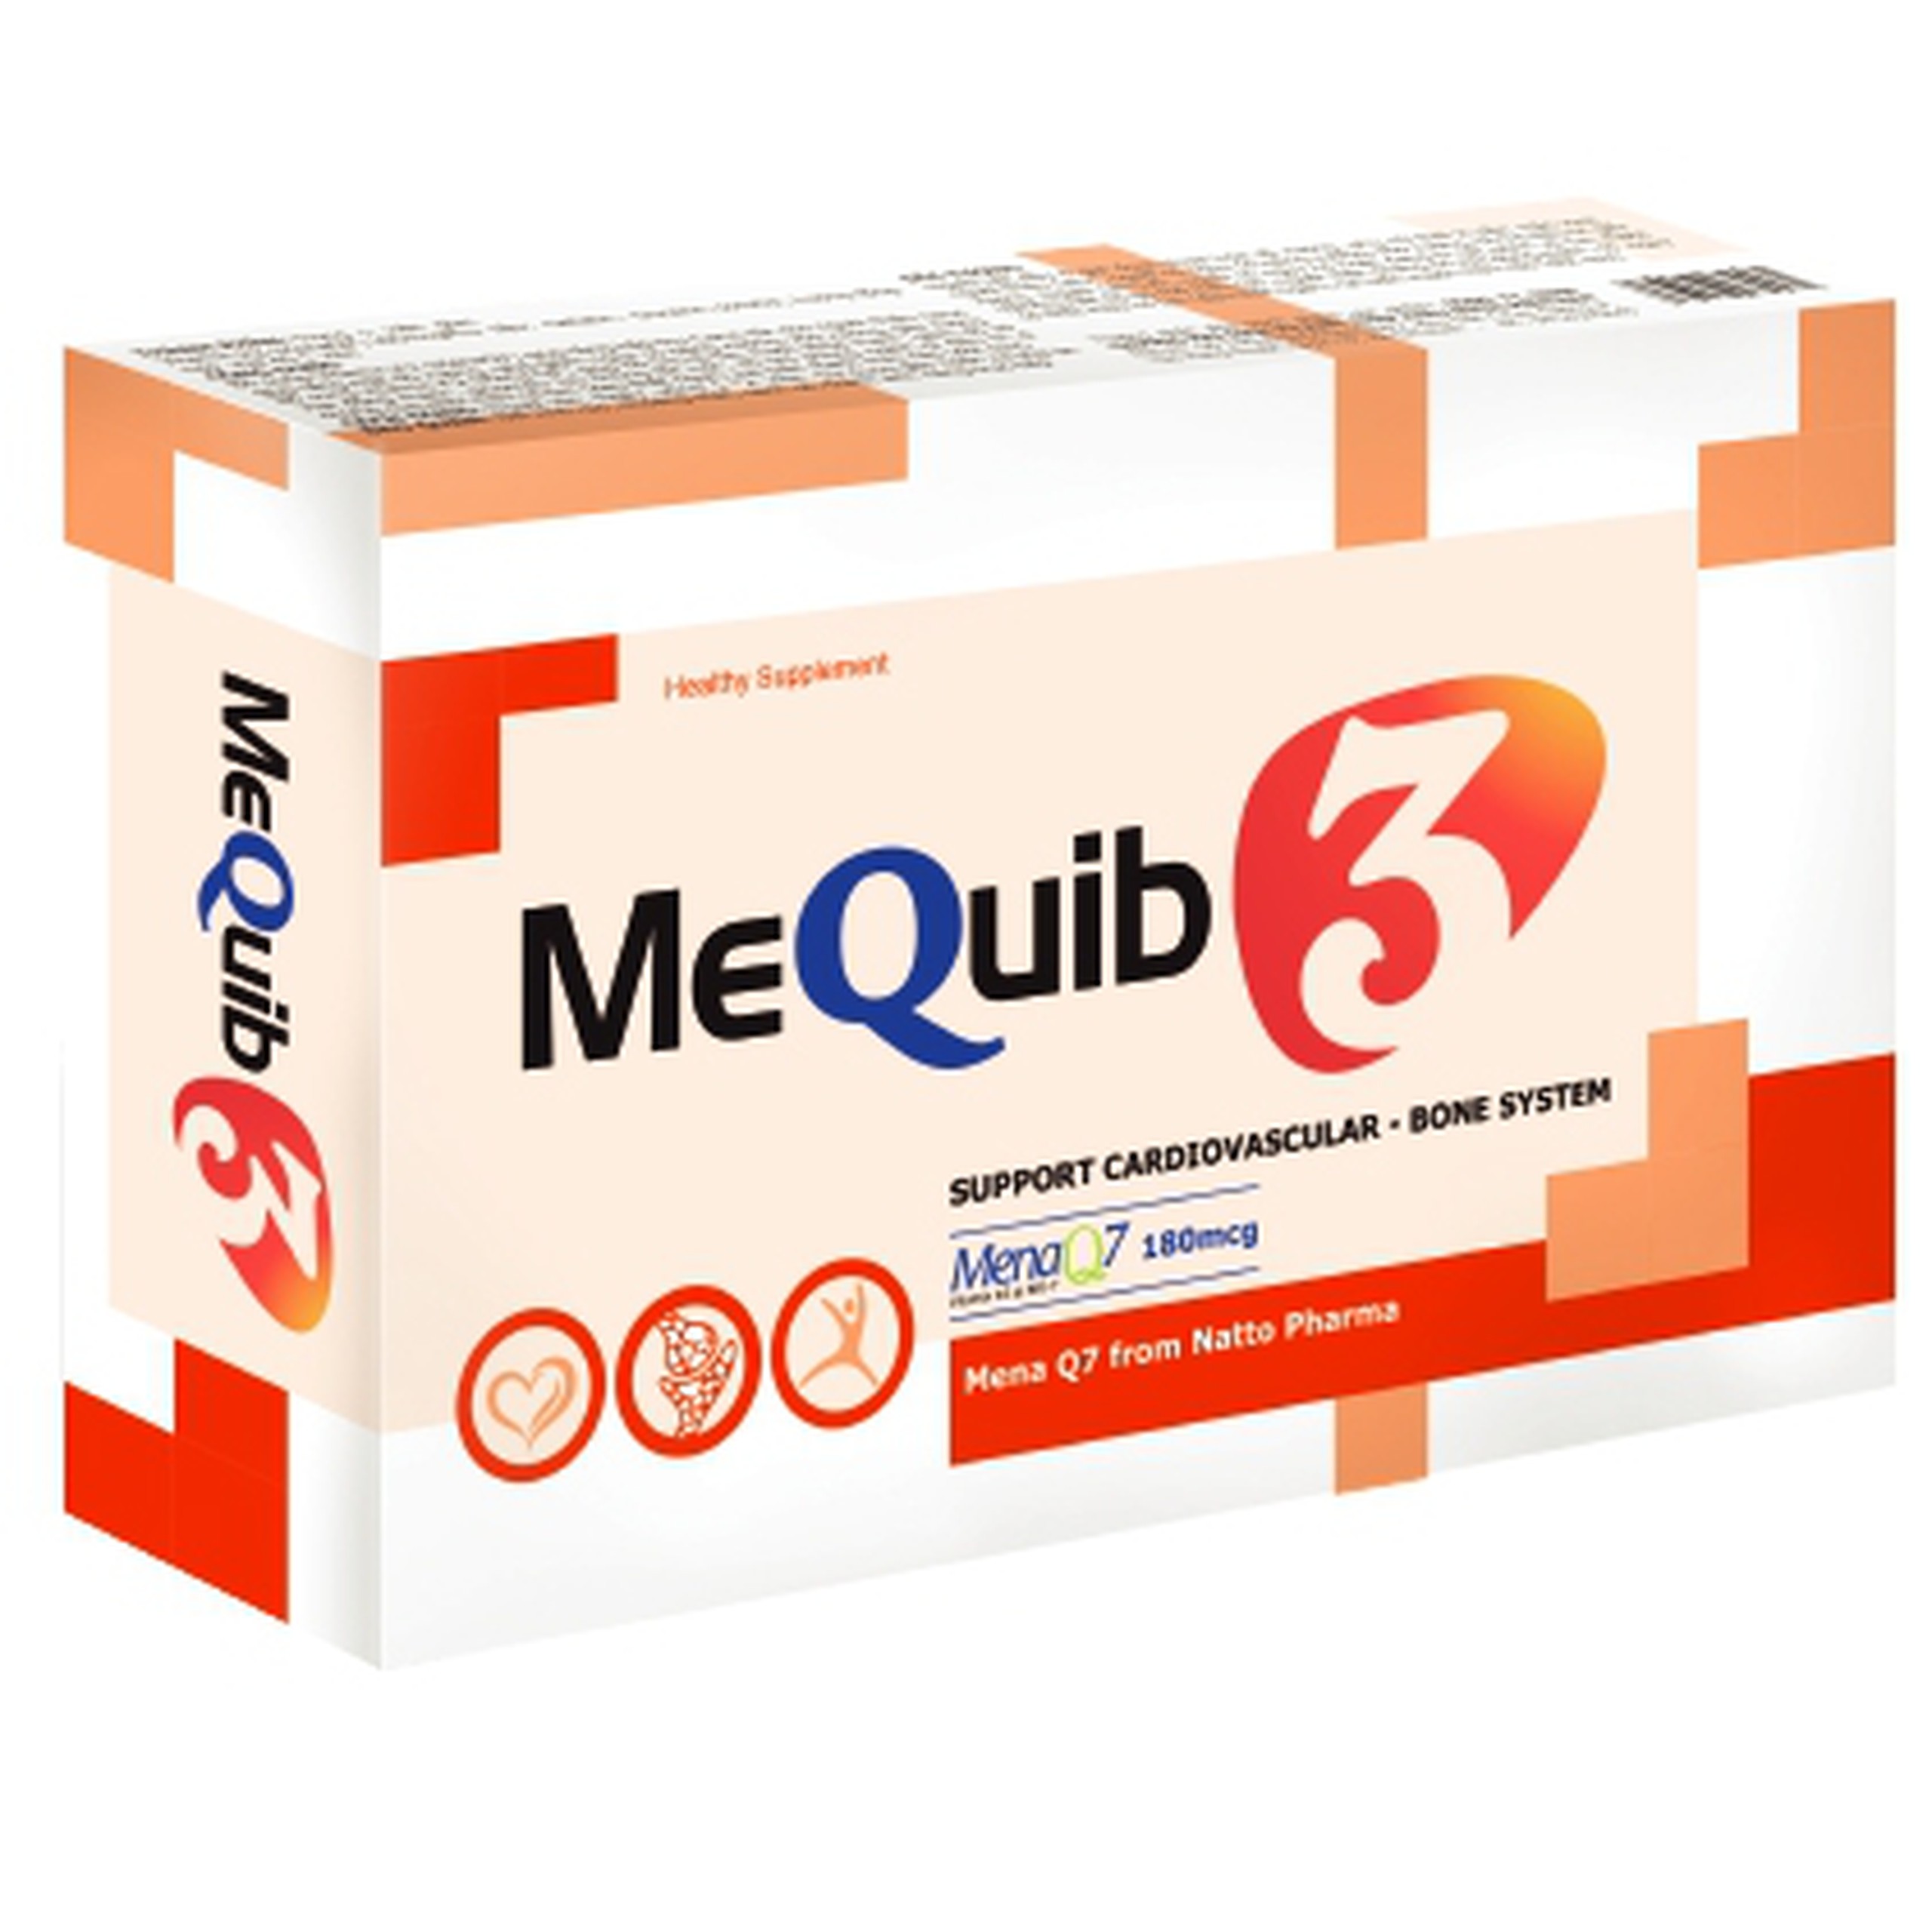 Viên uống MeQuib 3 Winpharma giúp giảm nguy cơ loãng xương (3 vỉ x 10 viên)